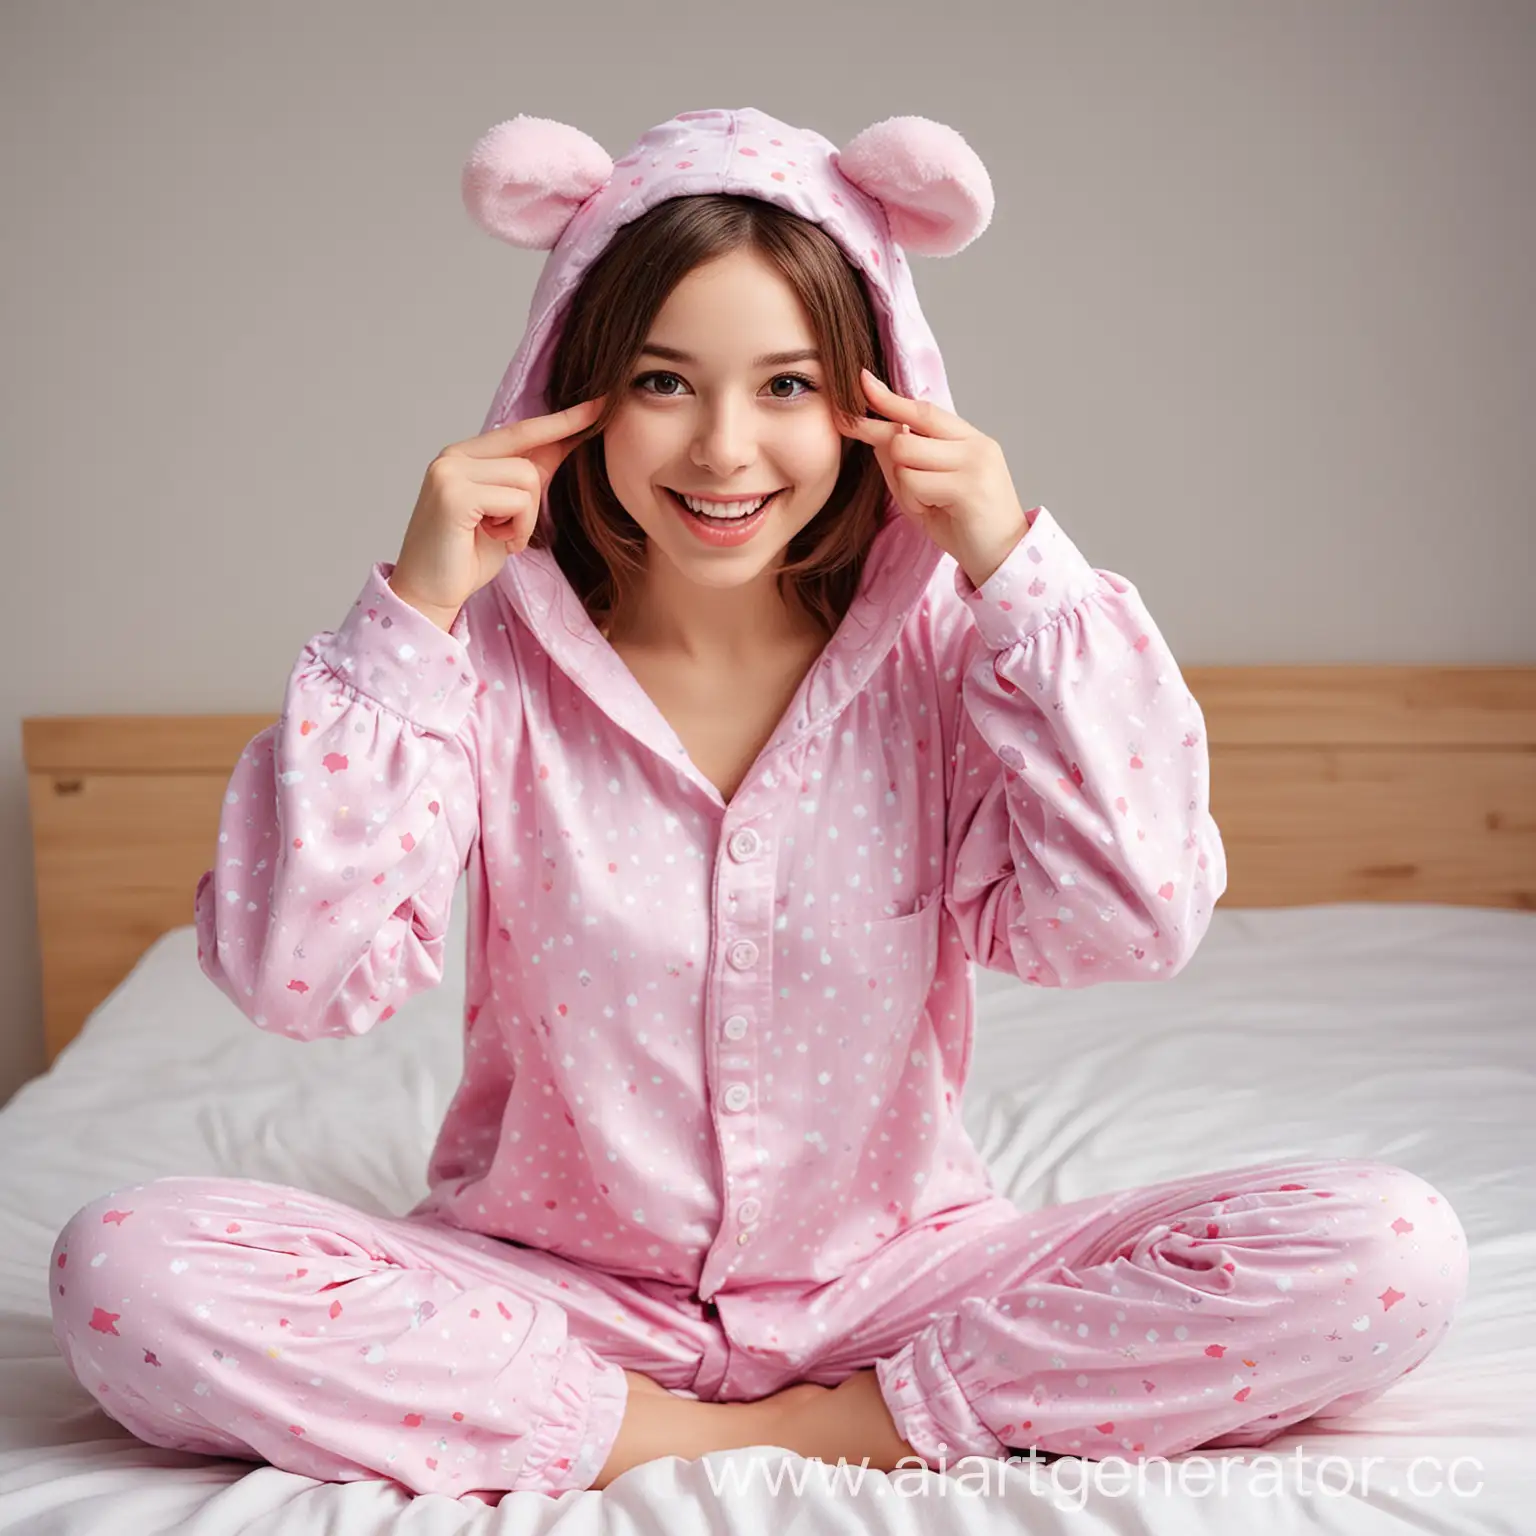 веселый портрет девушки в пижаме кегуруми
